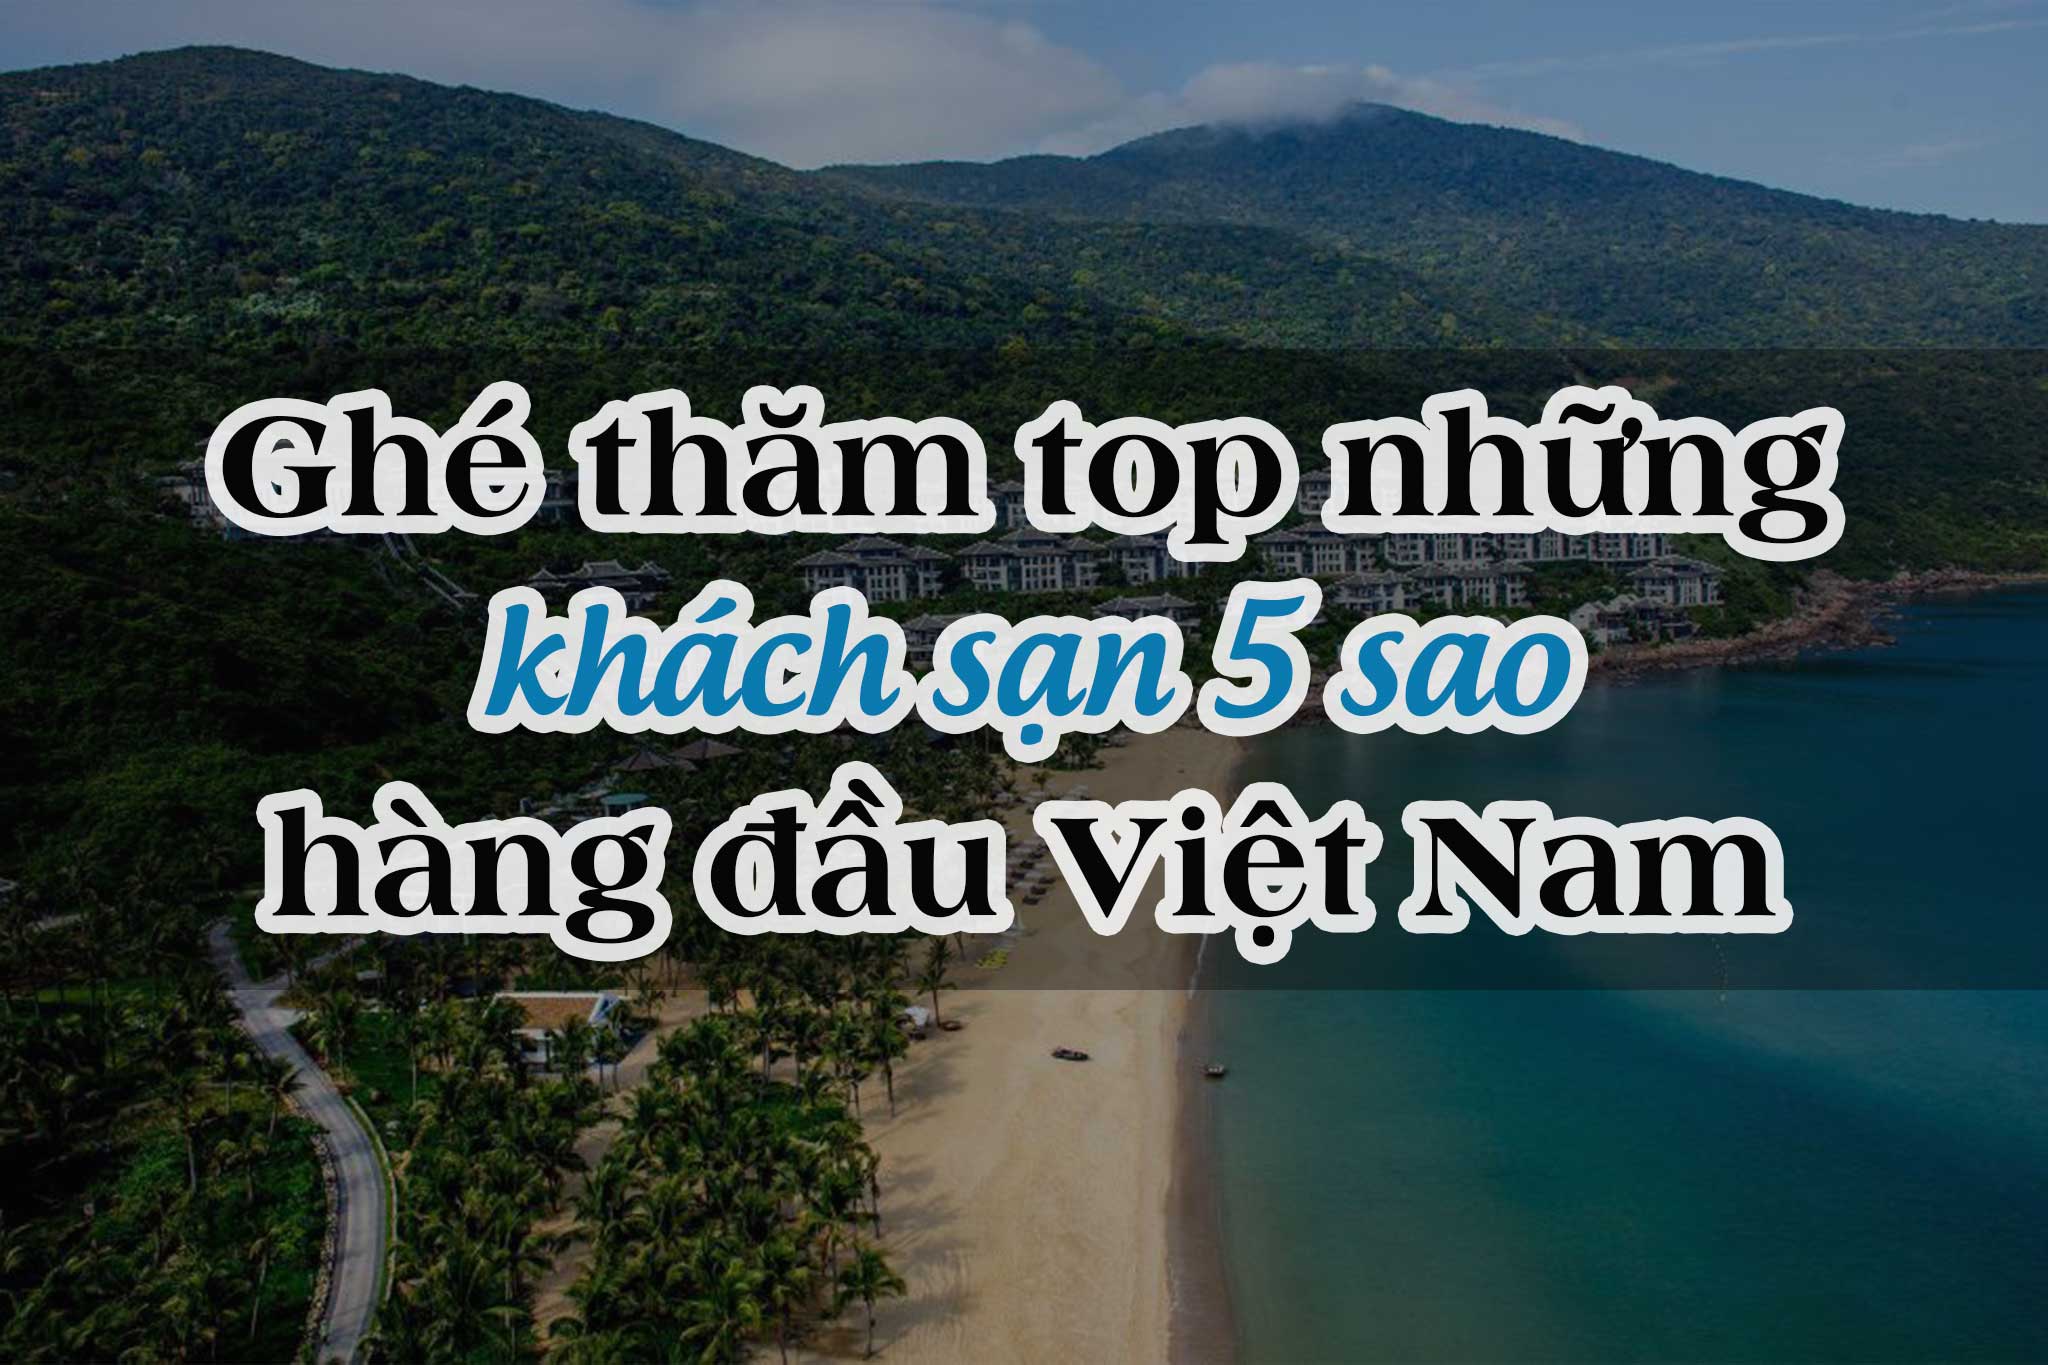 Ghé thăm top 4 khách sạn 5 sao hàng đầu Việt Nam